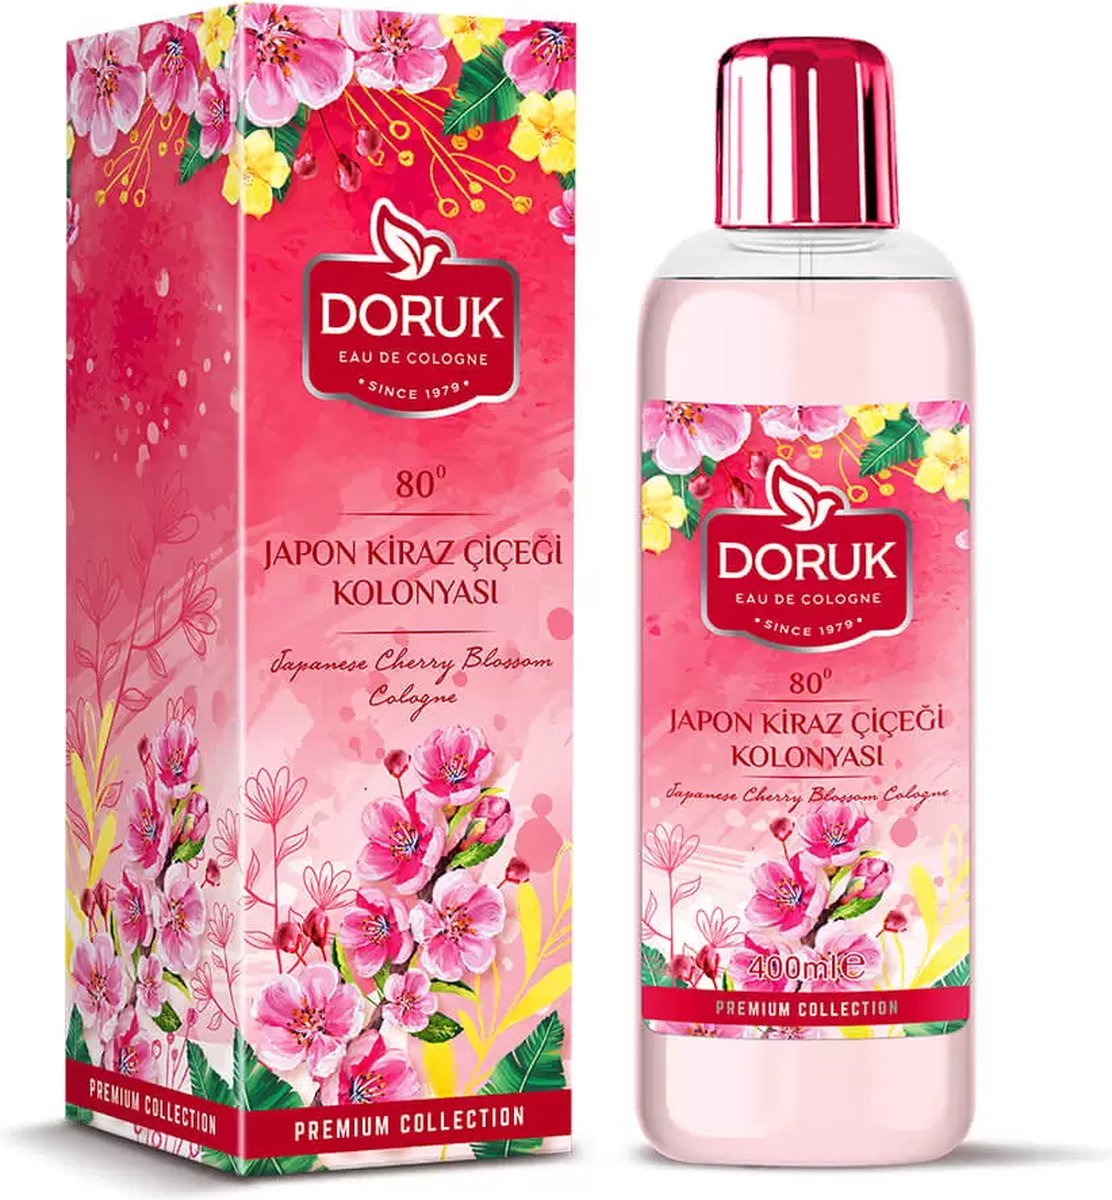 Doruk - Eau de cologne 400ml - 80° alcohol - Japanse kersenbloemen cologne - Optimale desinfectie van handen